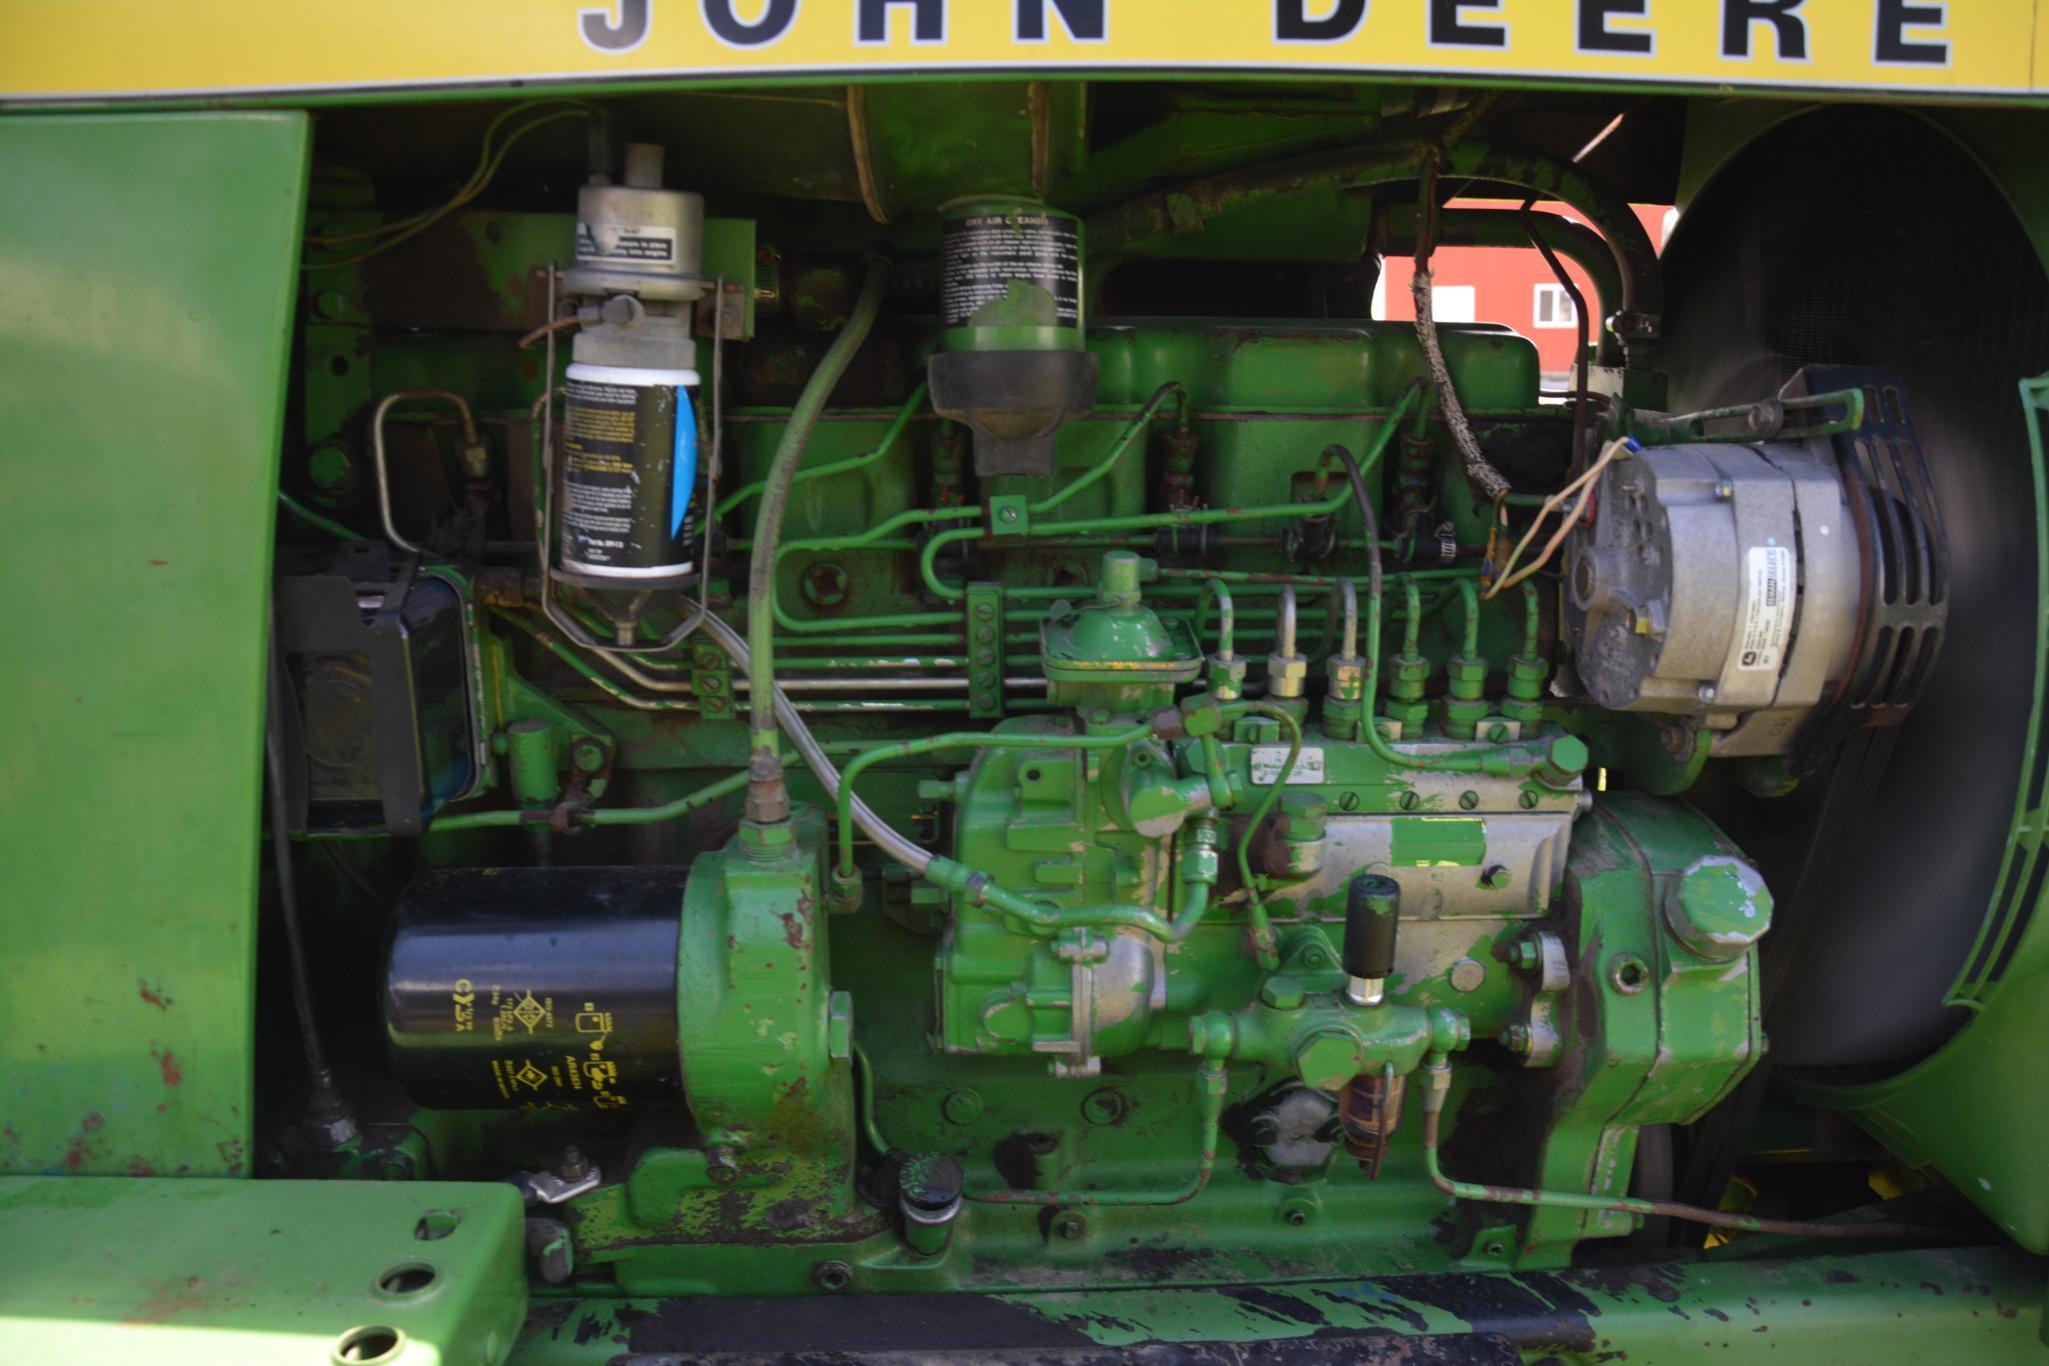 1977 John Deere 4630 tractor